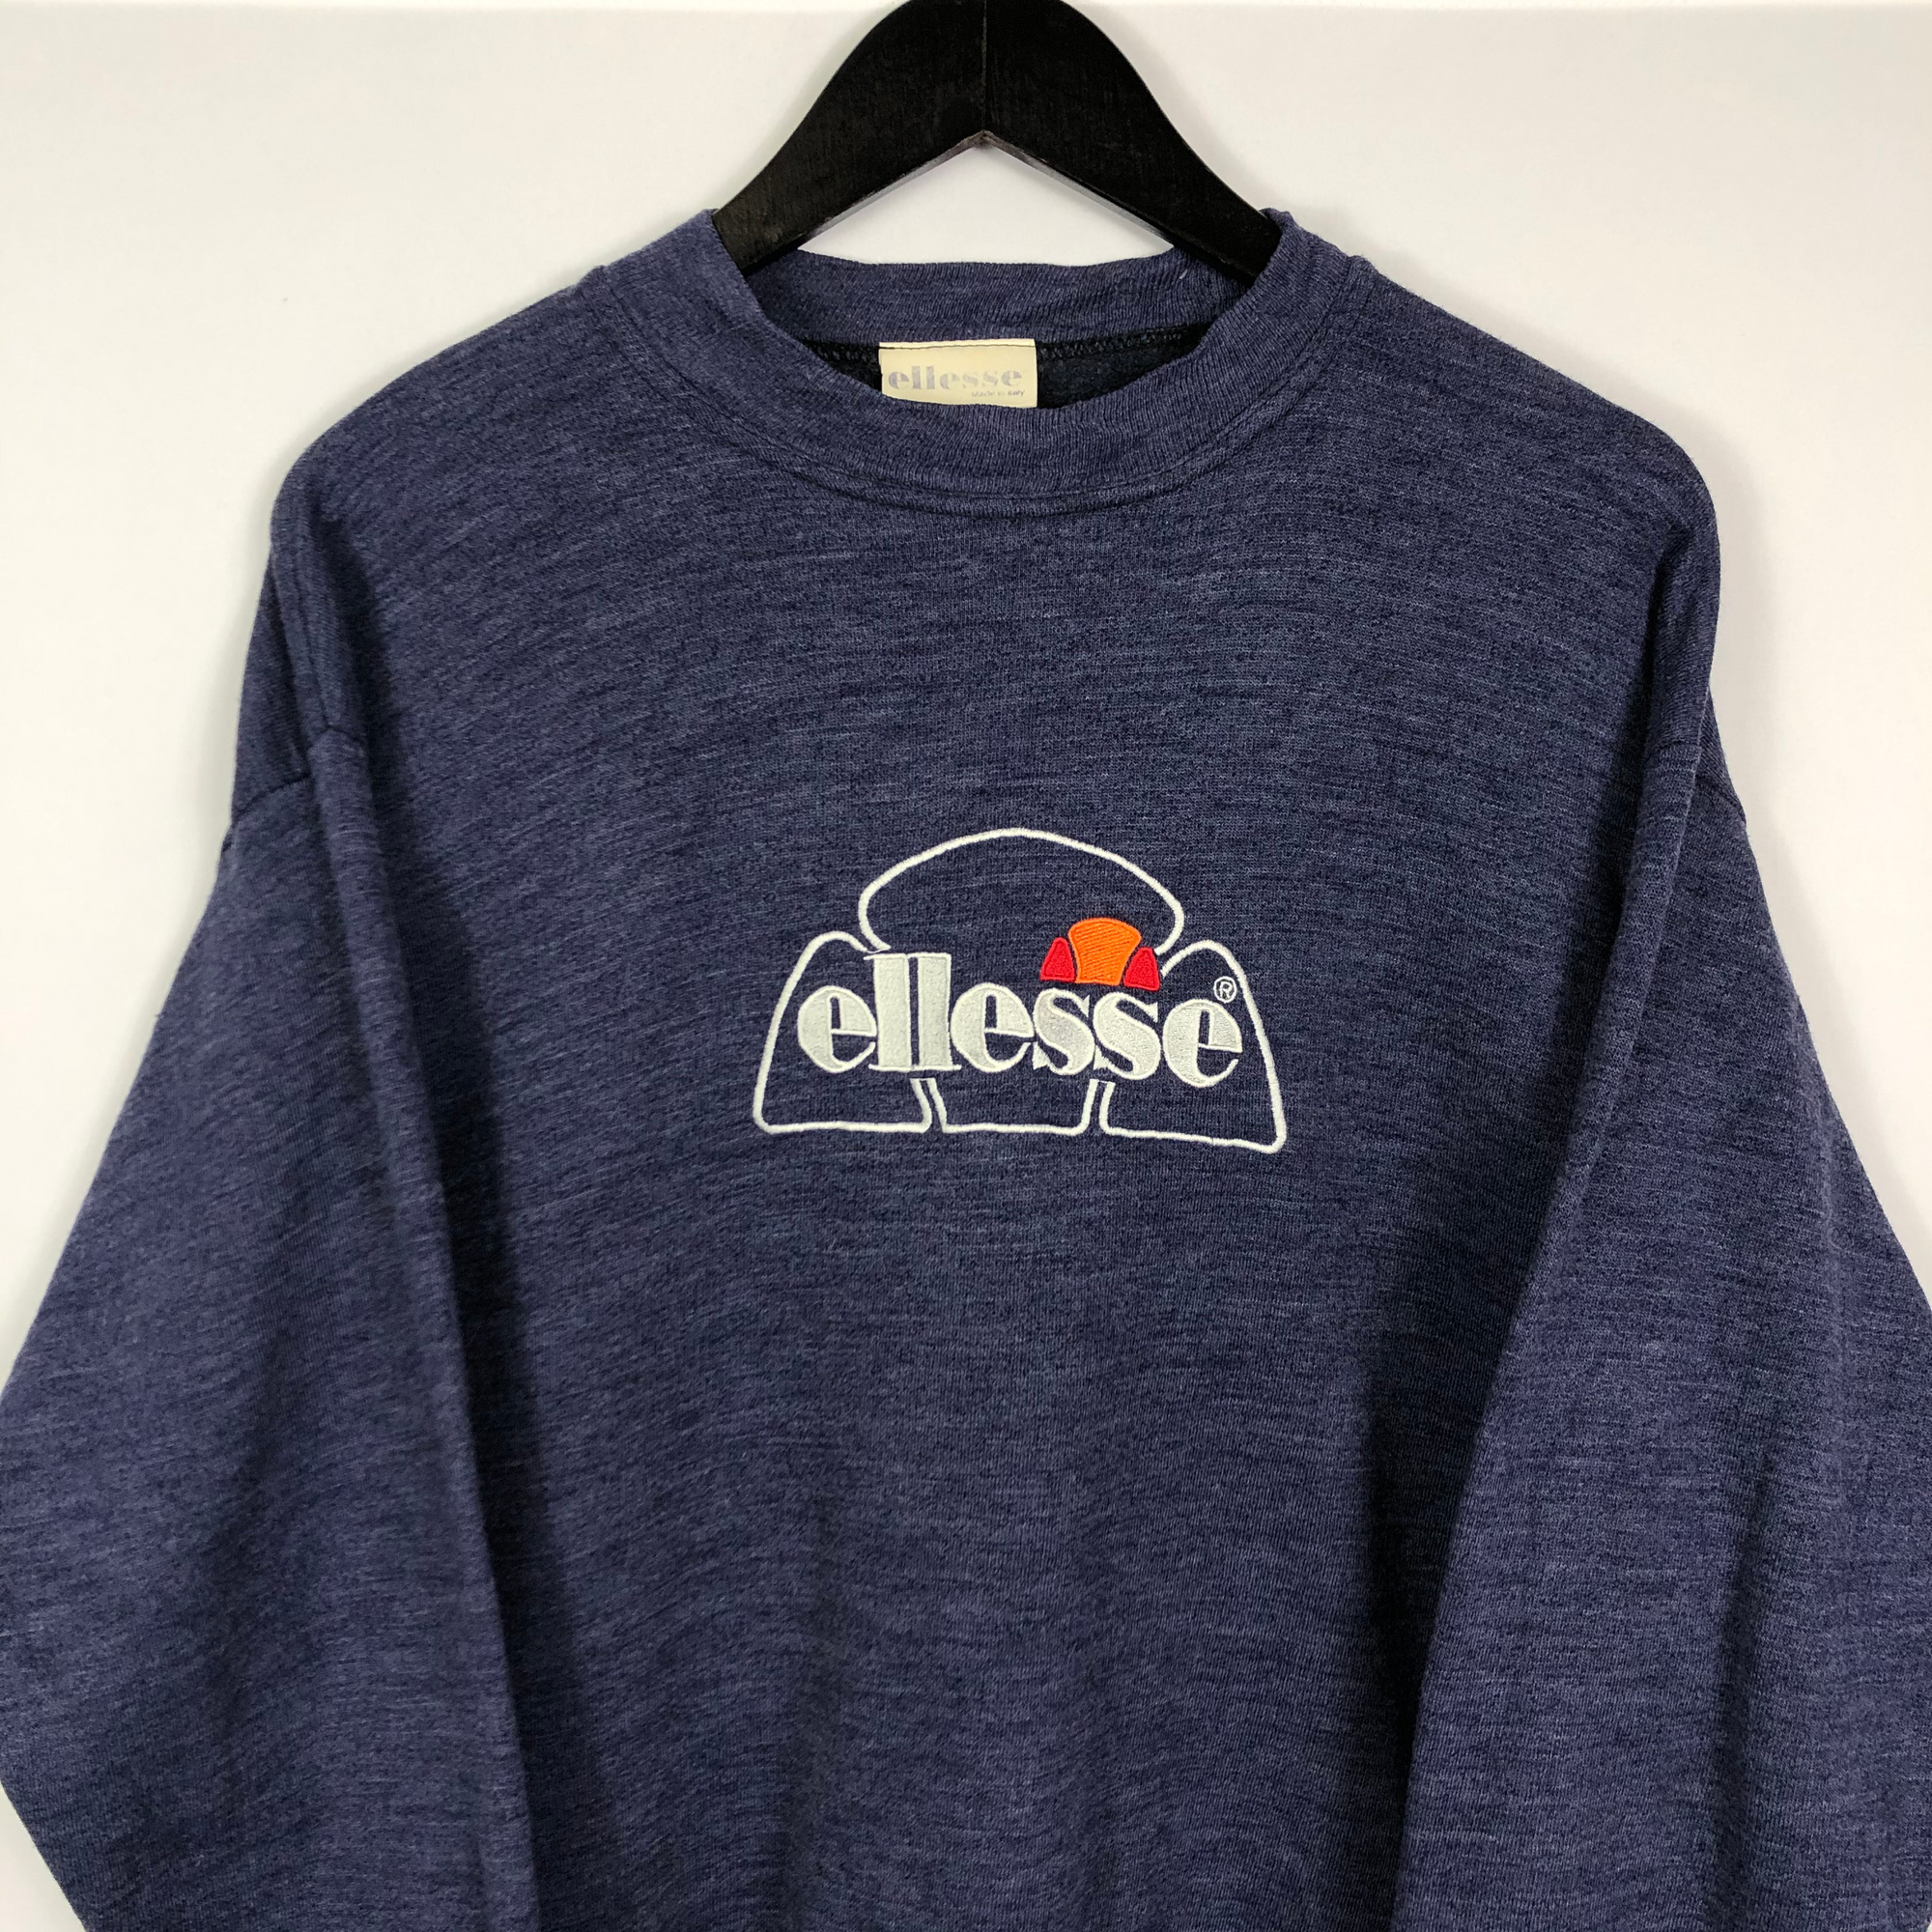 Vintage Ellesse Spellout Sweatshirt in Navy - Large